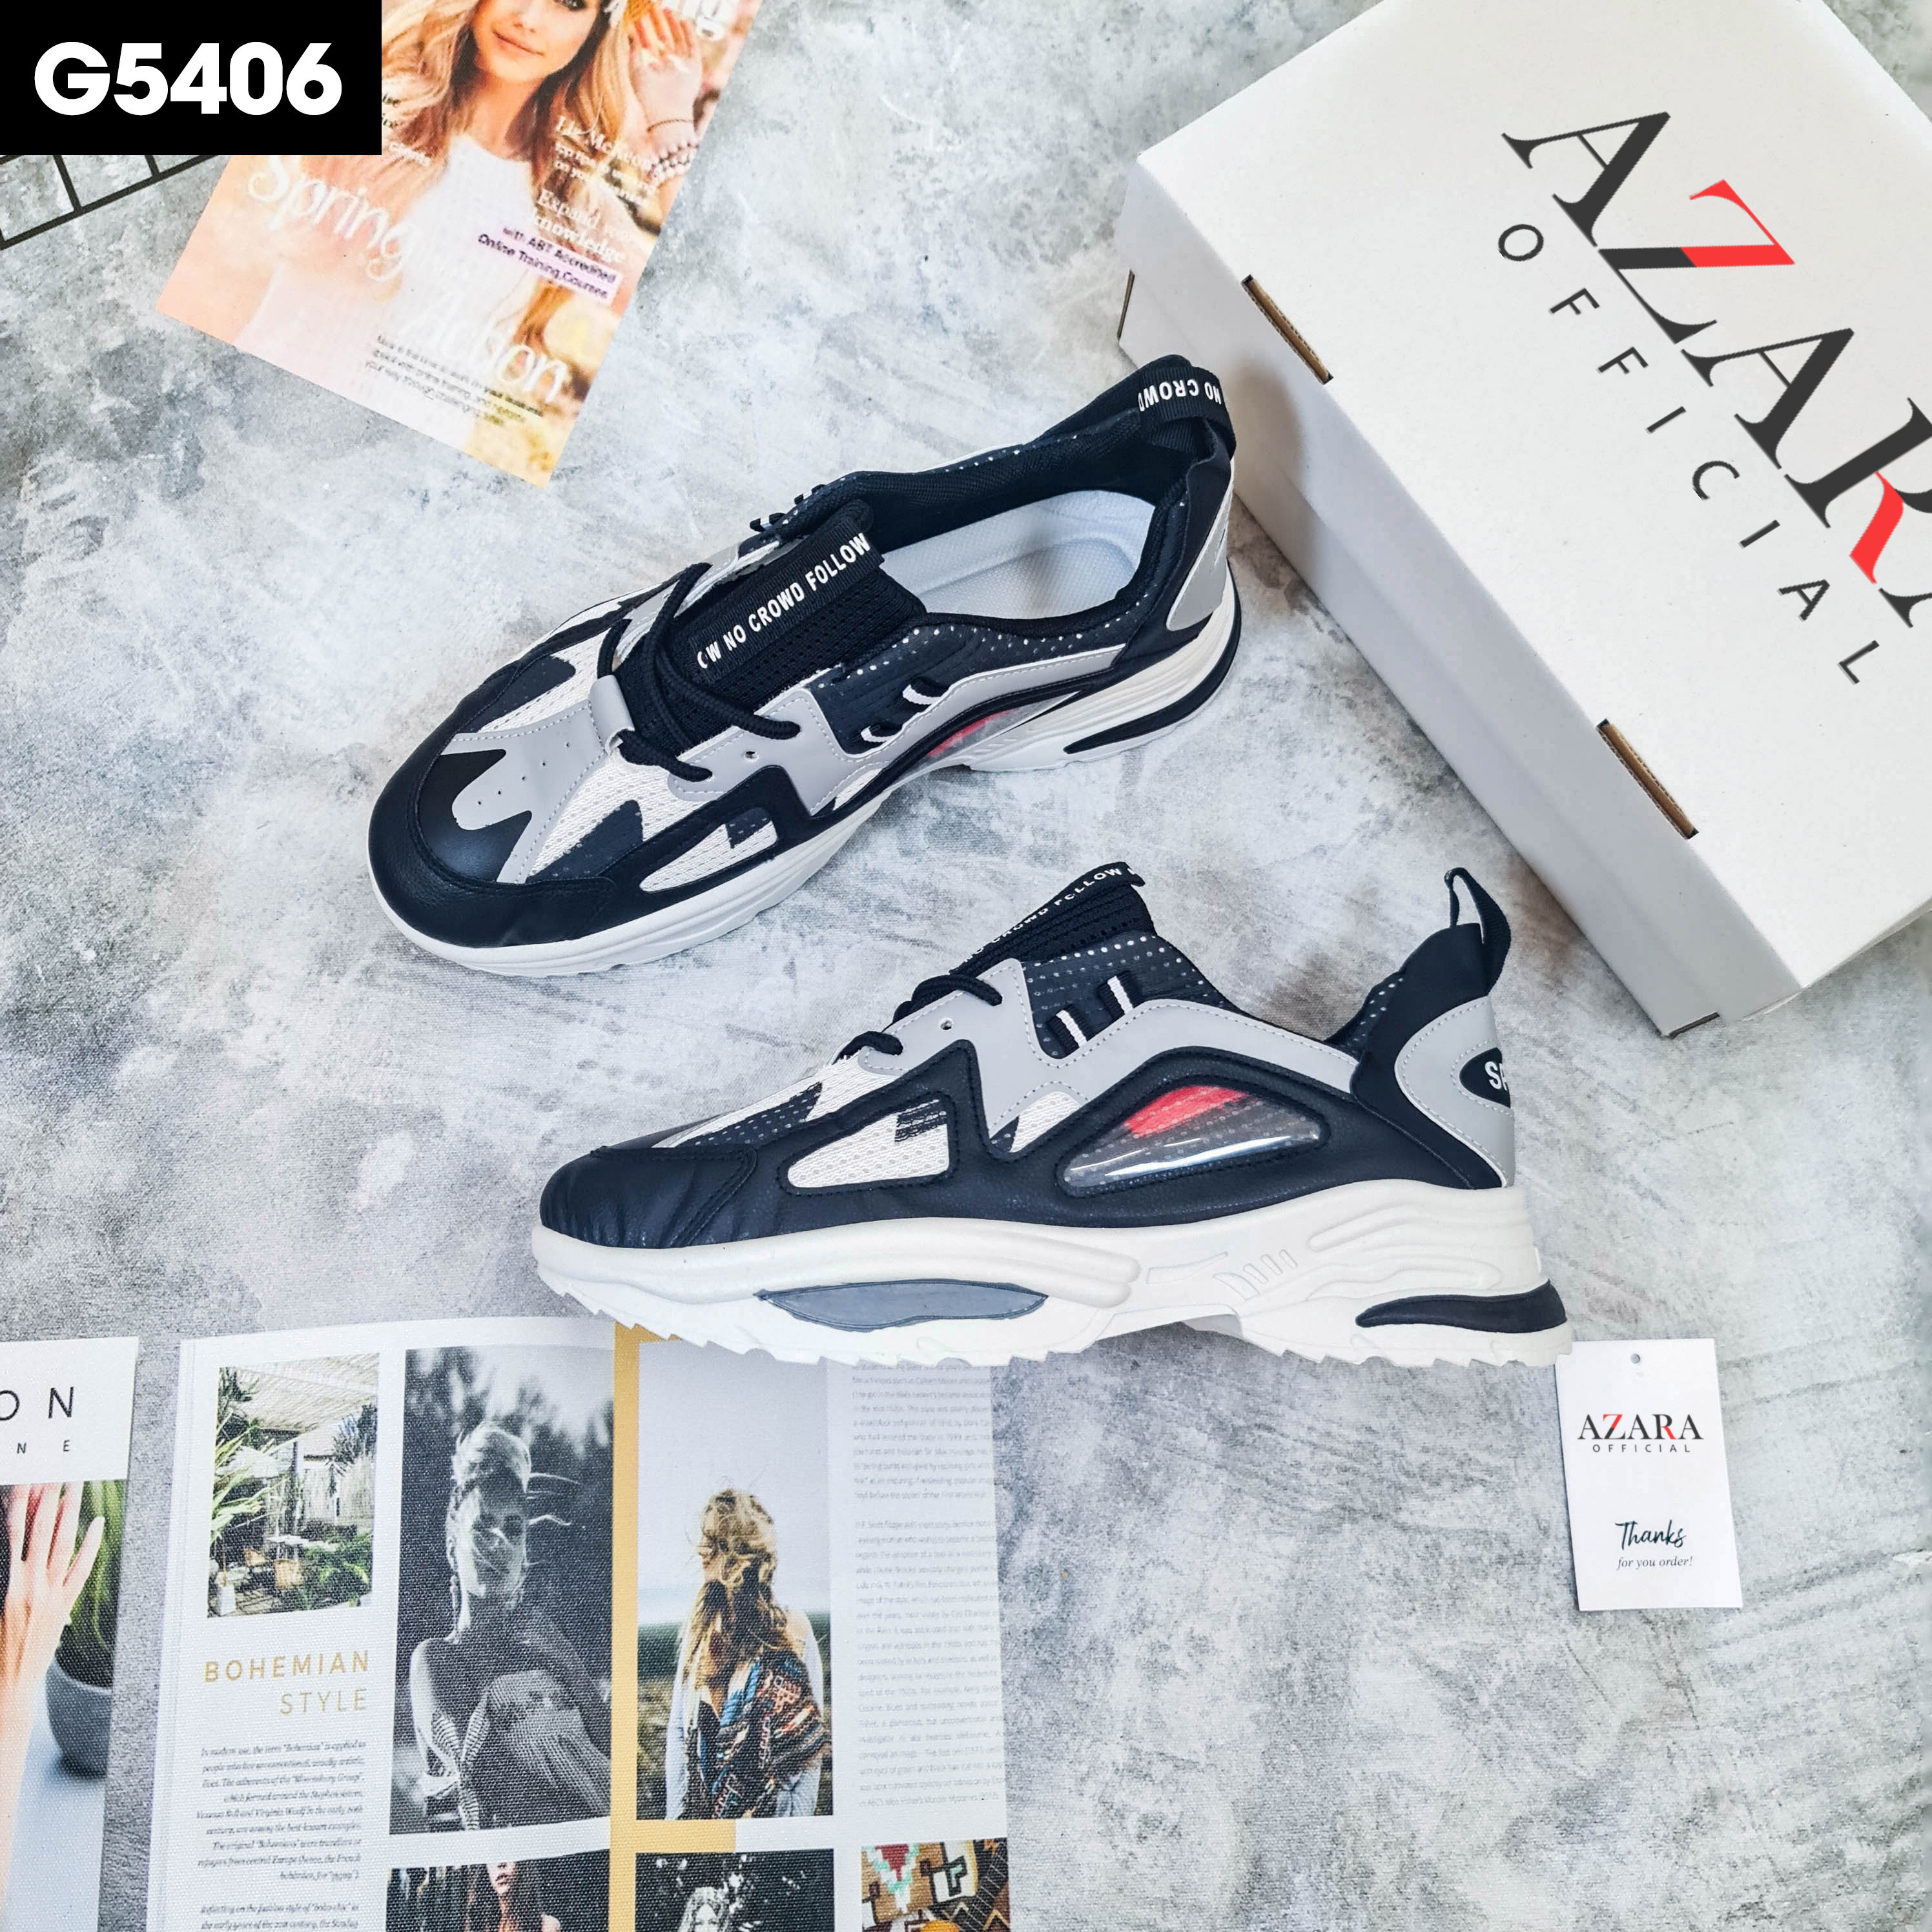 Giày Thể Thao Nam AZARA- Giày Sneaker Màu Trắng - Đen, Giày Thể Thao Đế Nhẹ Chống Sốc, Trẻ Trung, Năng Động - G5411